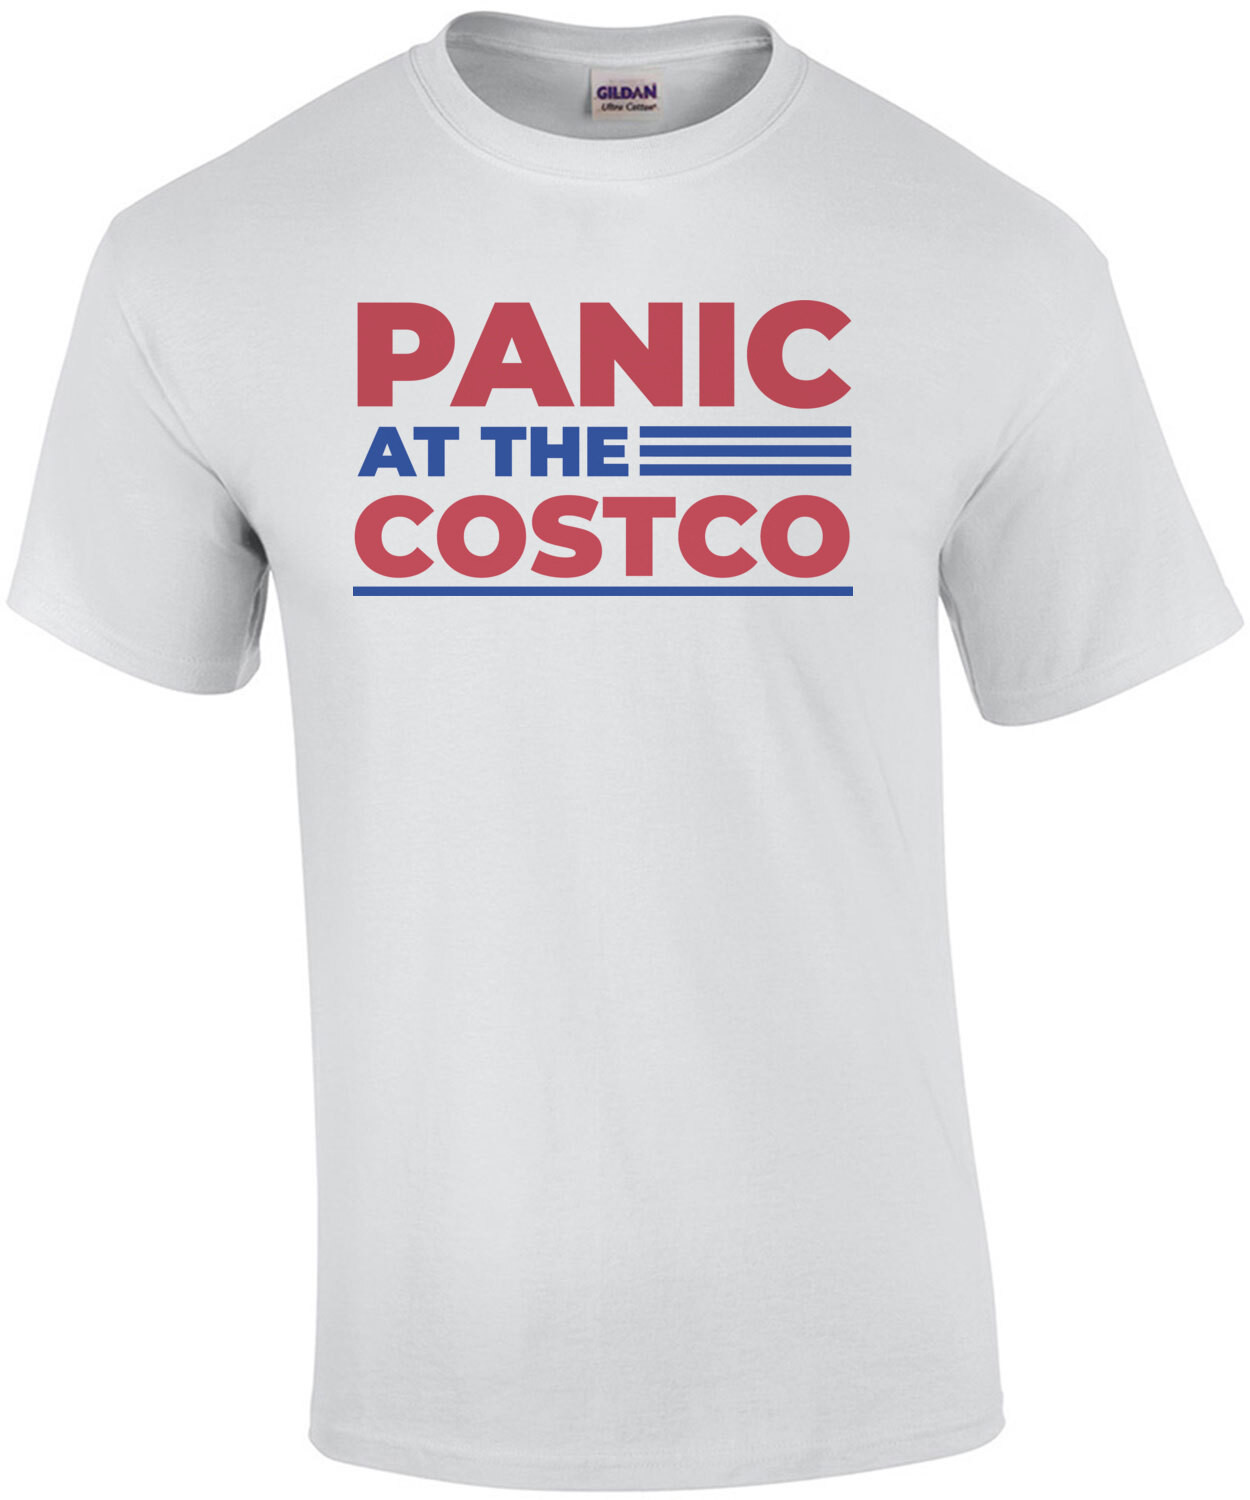 Panic at the Costco - Covid-19 Coronavirus T-Shirt